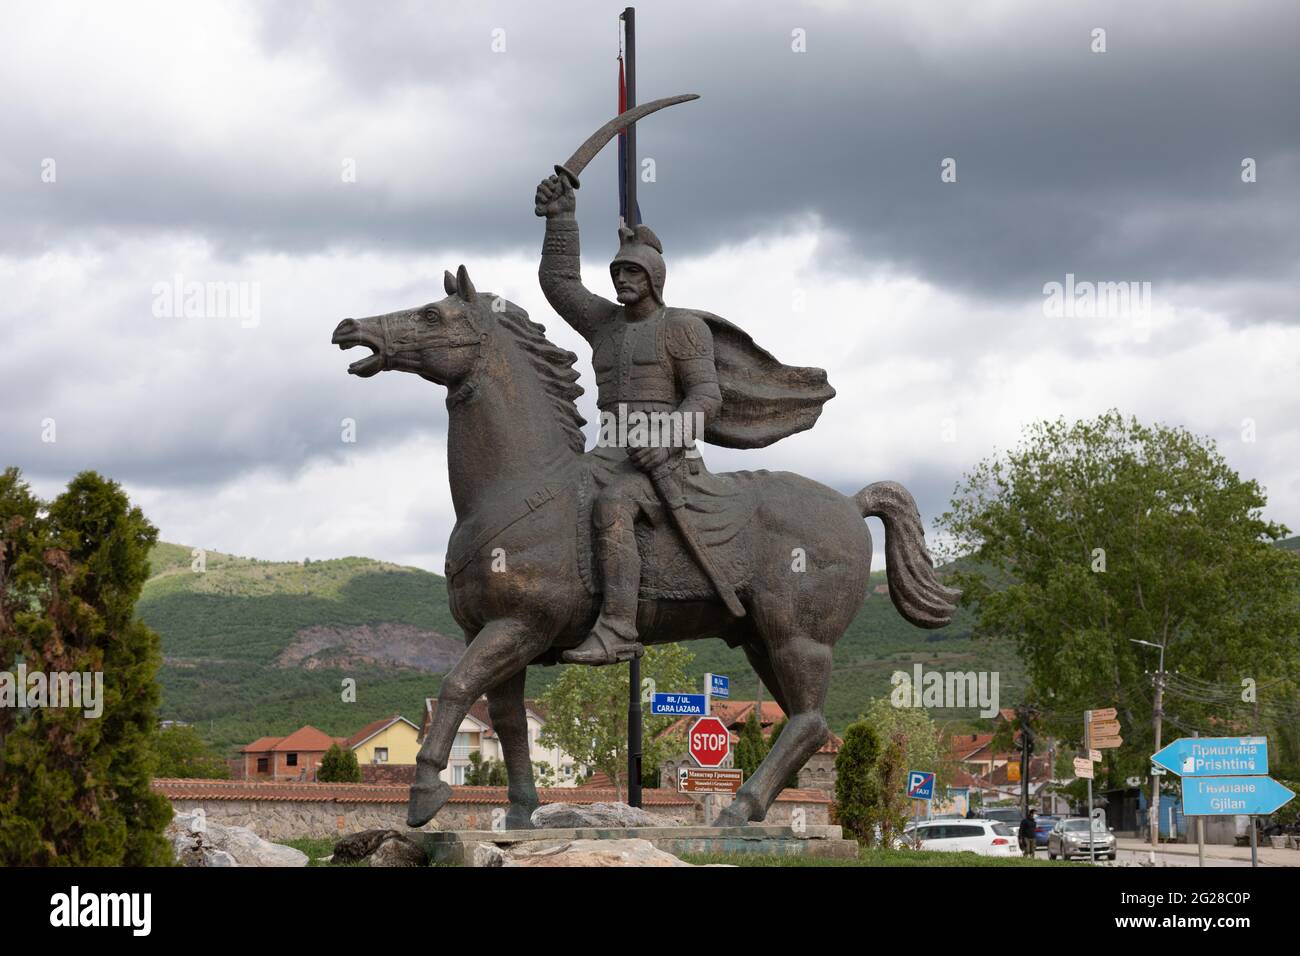 Miloš Obilić legendäre serbische Ritter XIV, Statue auf Pferd in Gracanica, in der Nähe von Pristina, Kosovo, Serbien Stockfoto